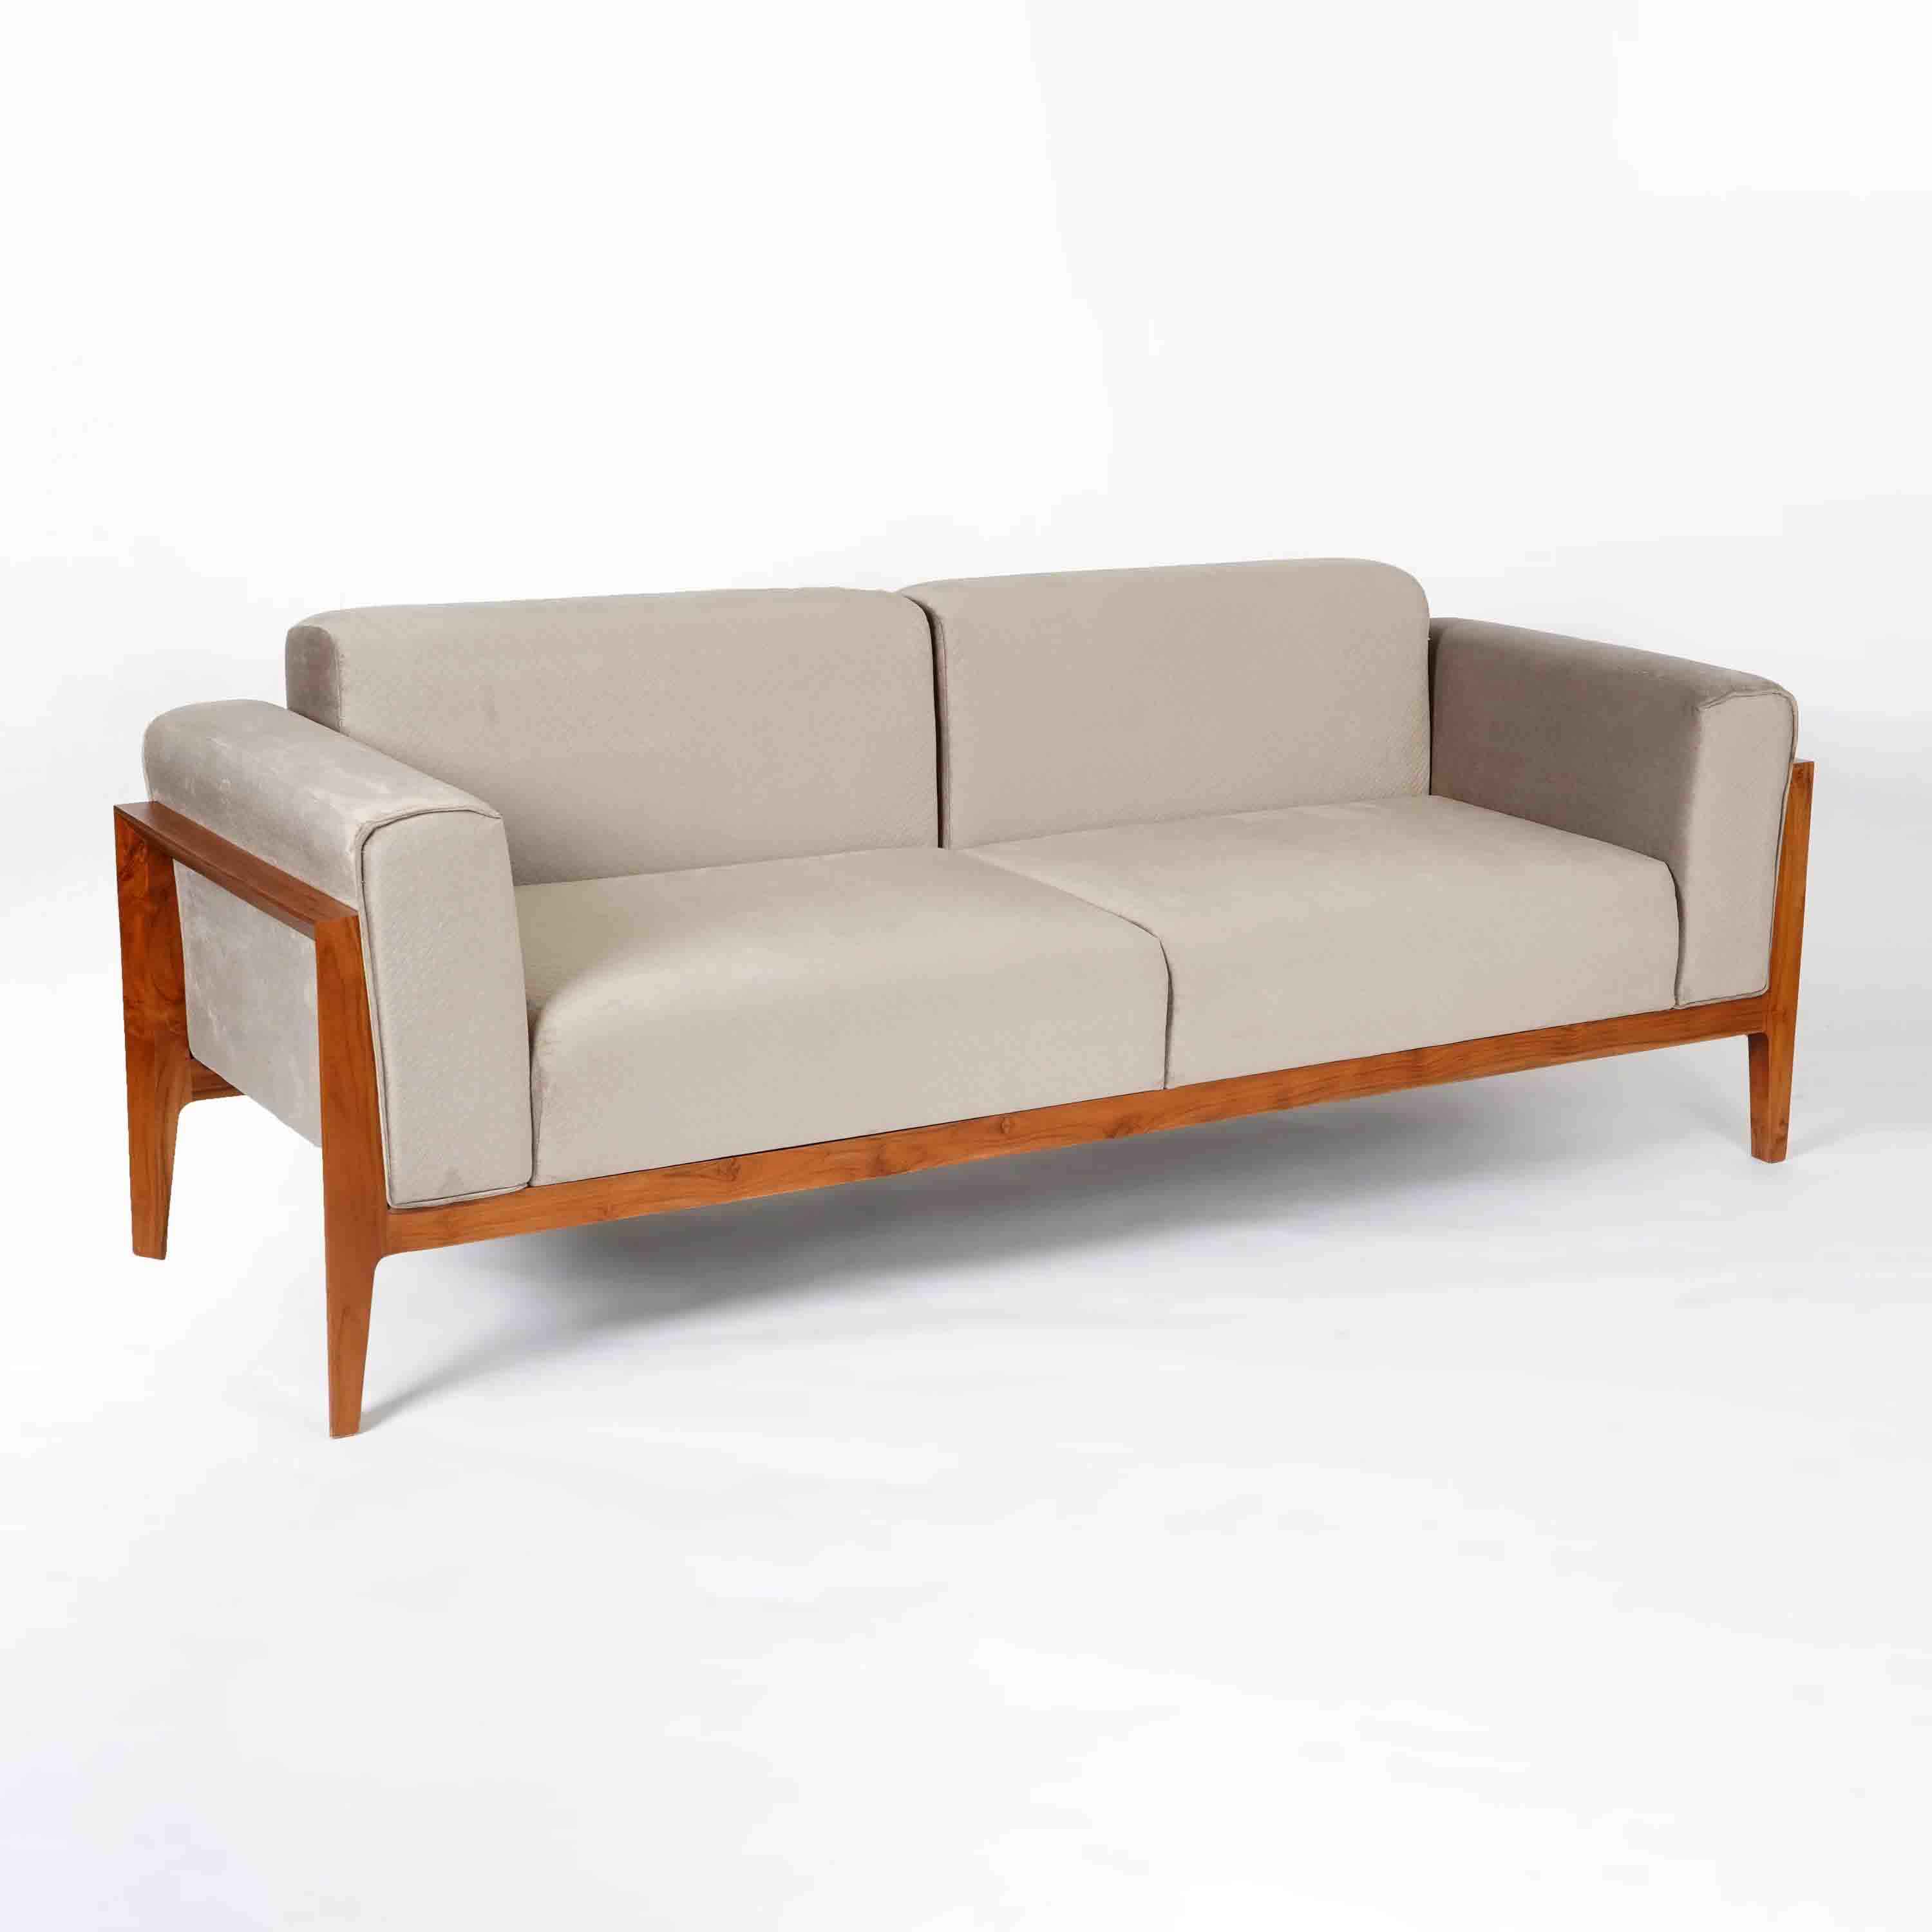 Dalia | 4 Seater Sofa